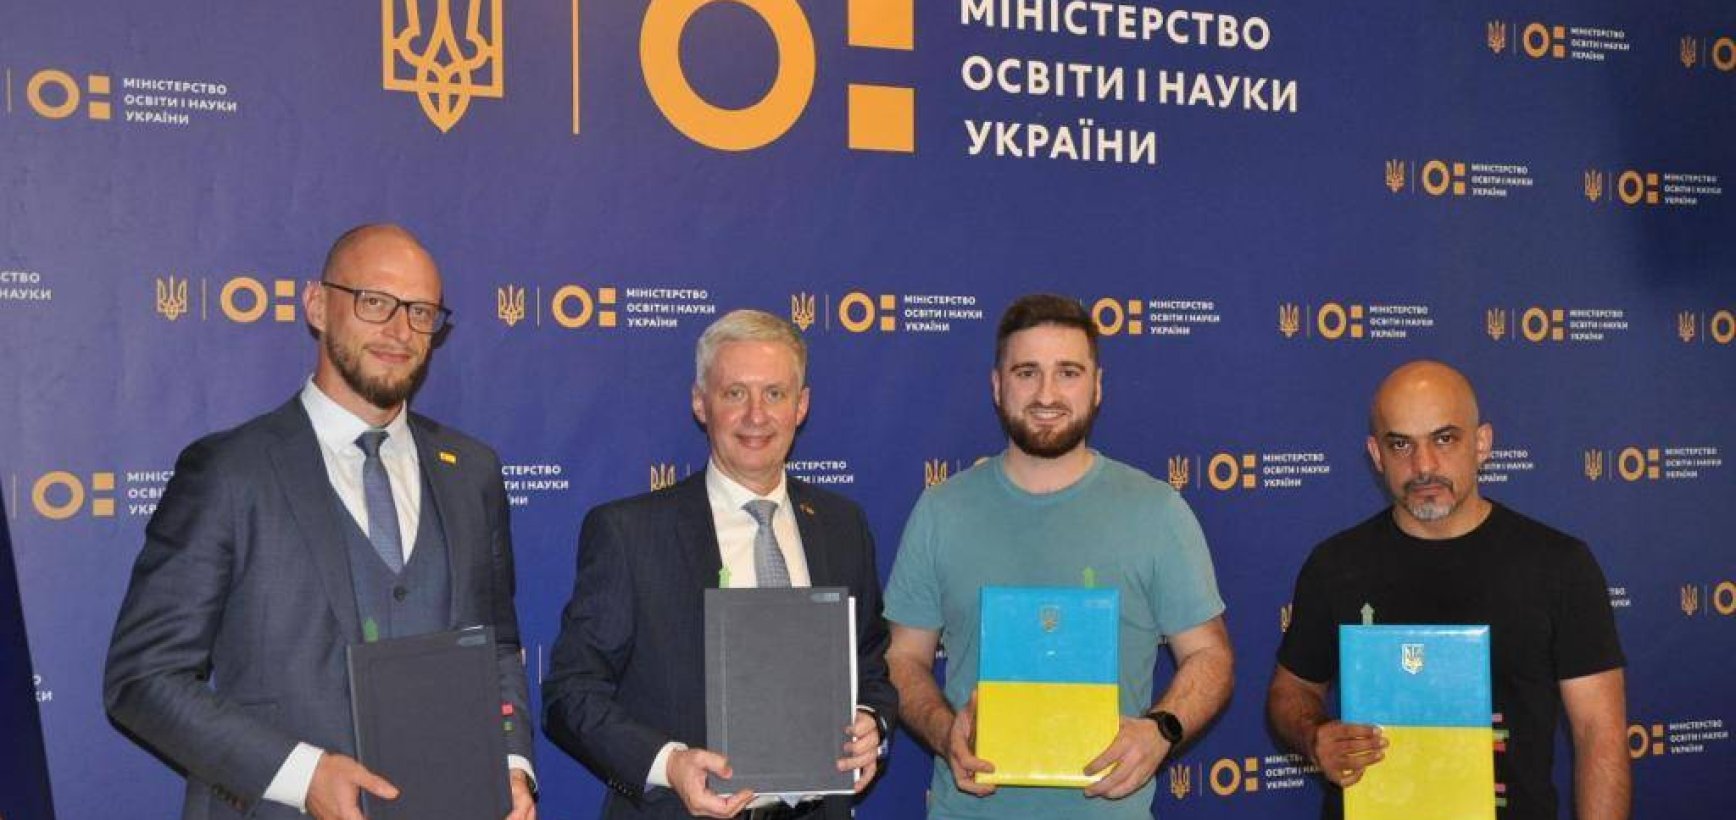 Bendra Lietuvos ir Ukrainos iniciatyva kvies architektus kartu kurti Ateities mokyklą Ukrainoje 